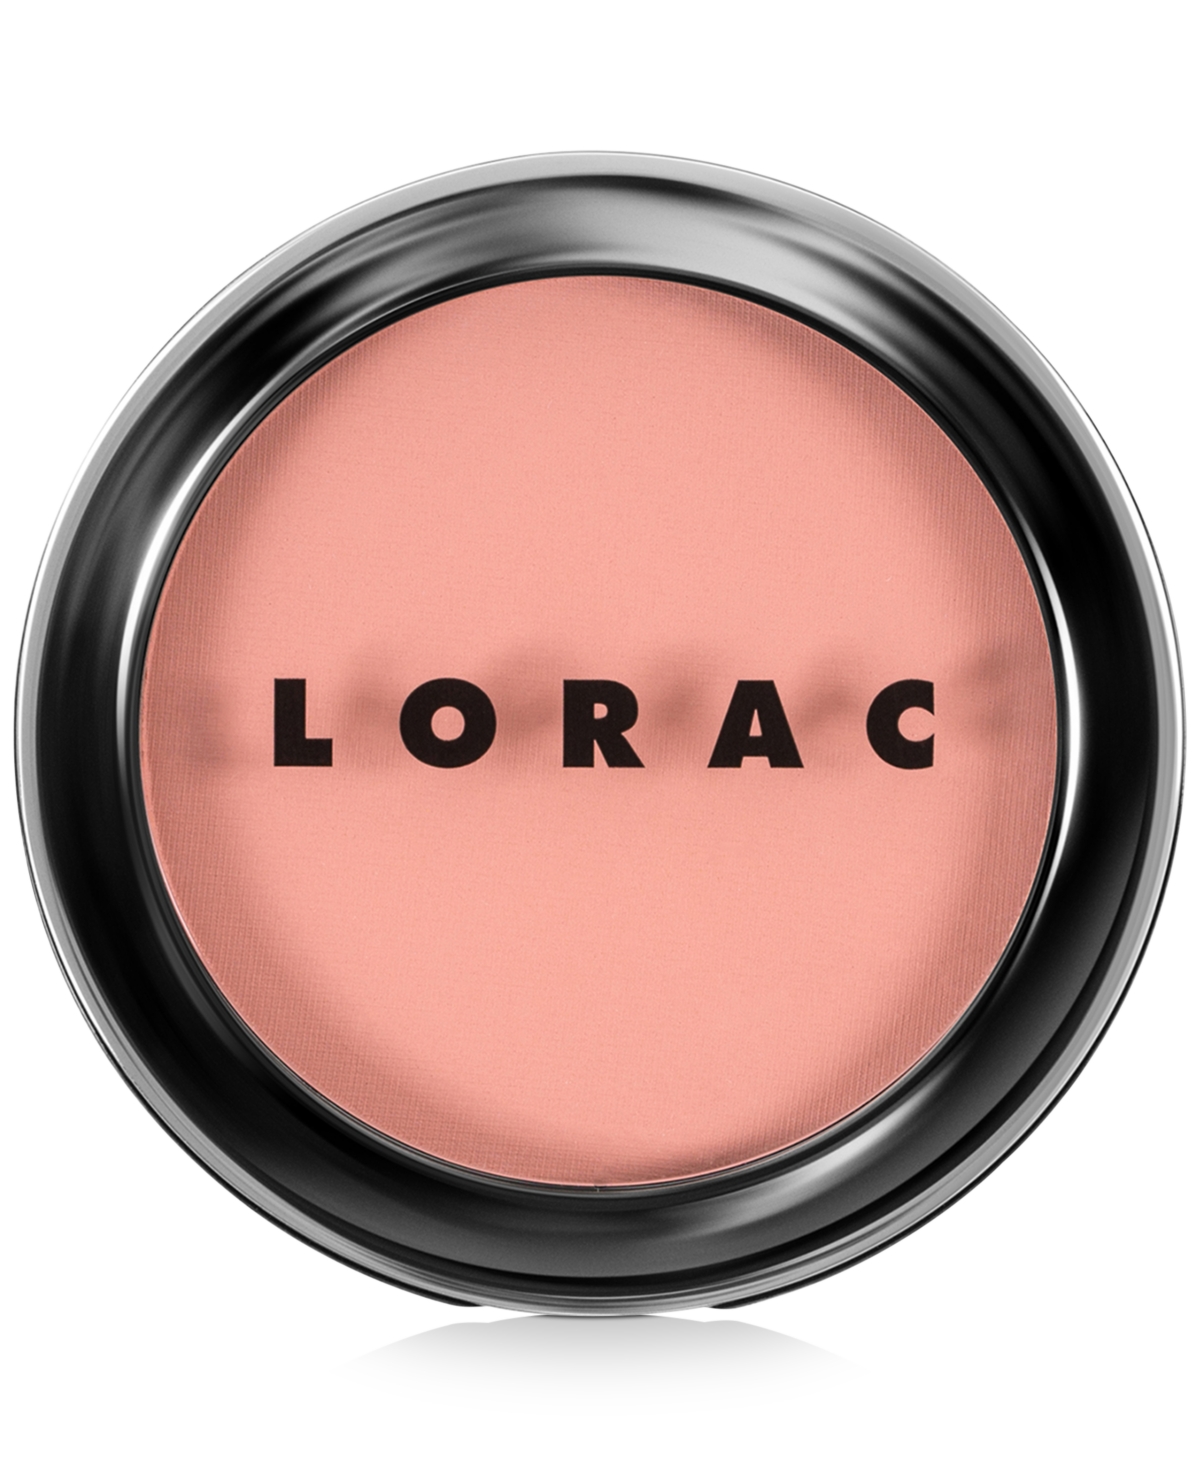 Lorac Color Source Buildable Blush